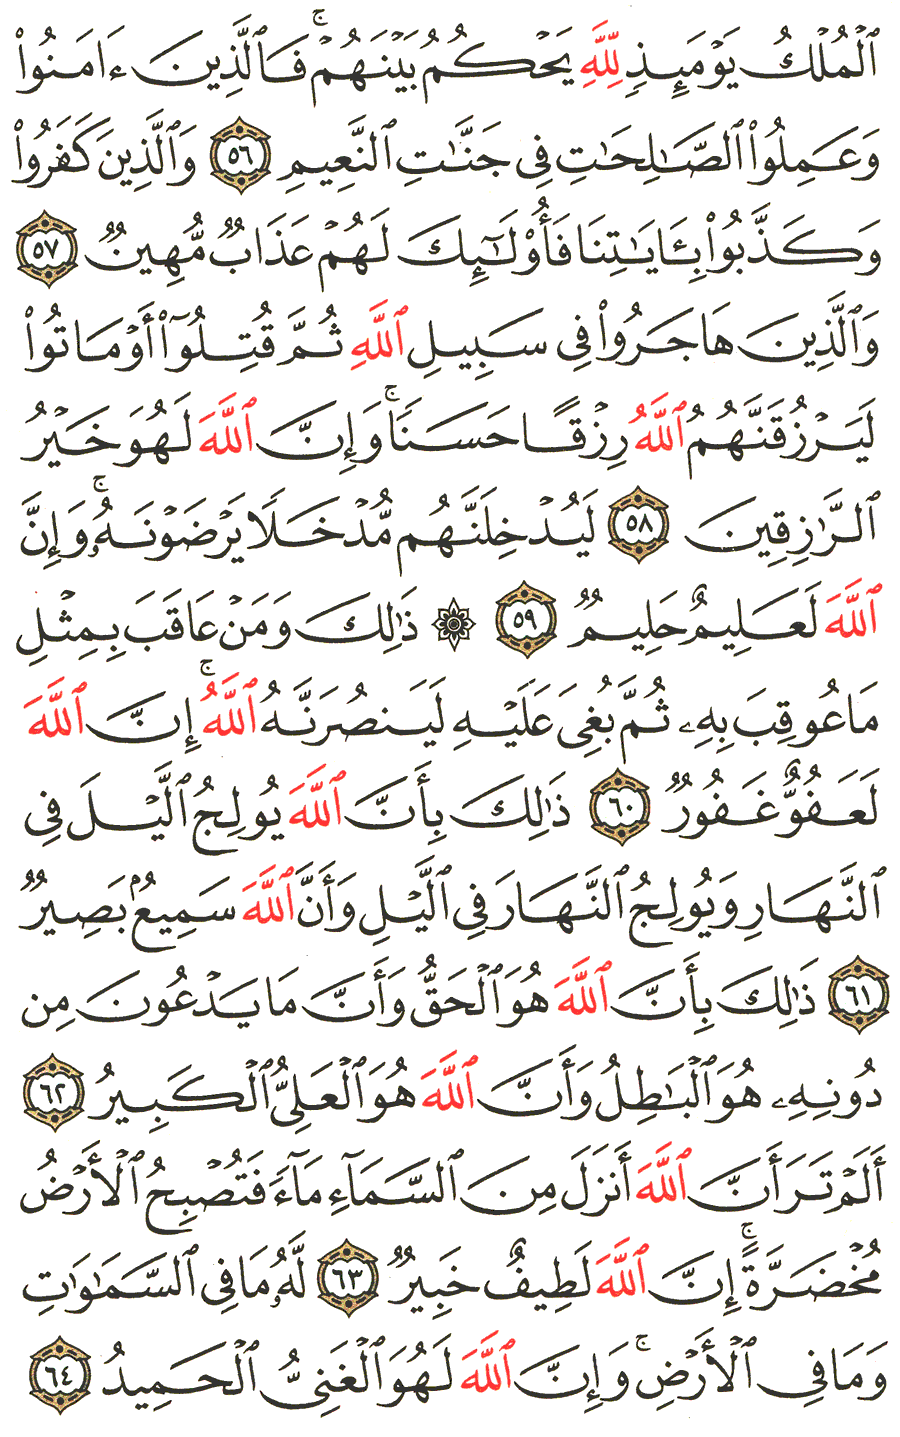 الصفحة رقم 339  من القرآن الكريم مكتوبة من المصحف